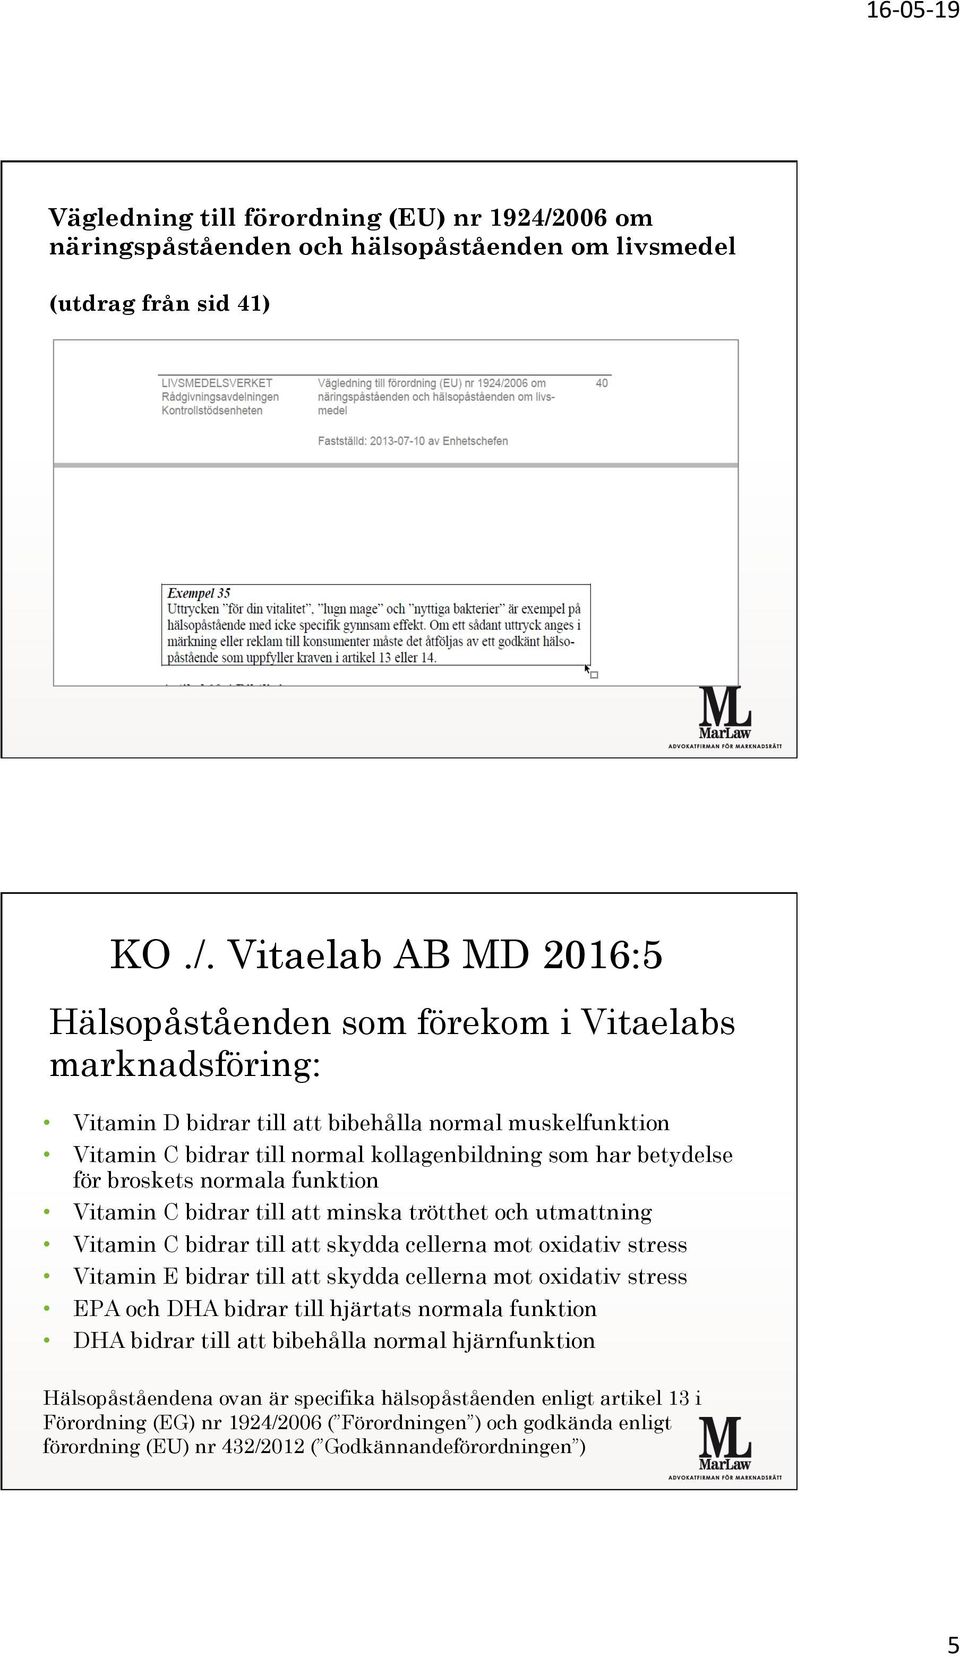 Vitaelab AB MD 2016:5 Hälsopåståenden som förekom i Vitaelabs marknadsföring: Vitamin D bidrar till att bibehålla normal muskelfunktion Vitamin C bidrar till normal kollagenbildning som har betydelse